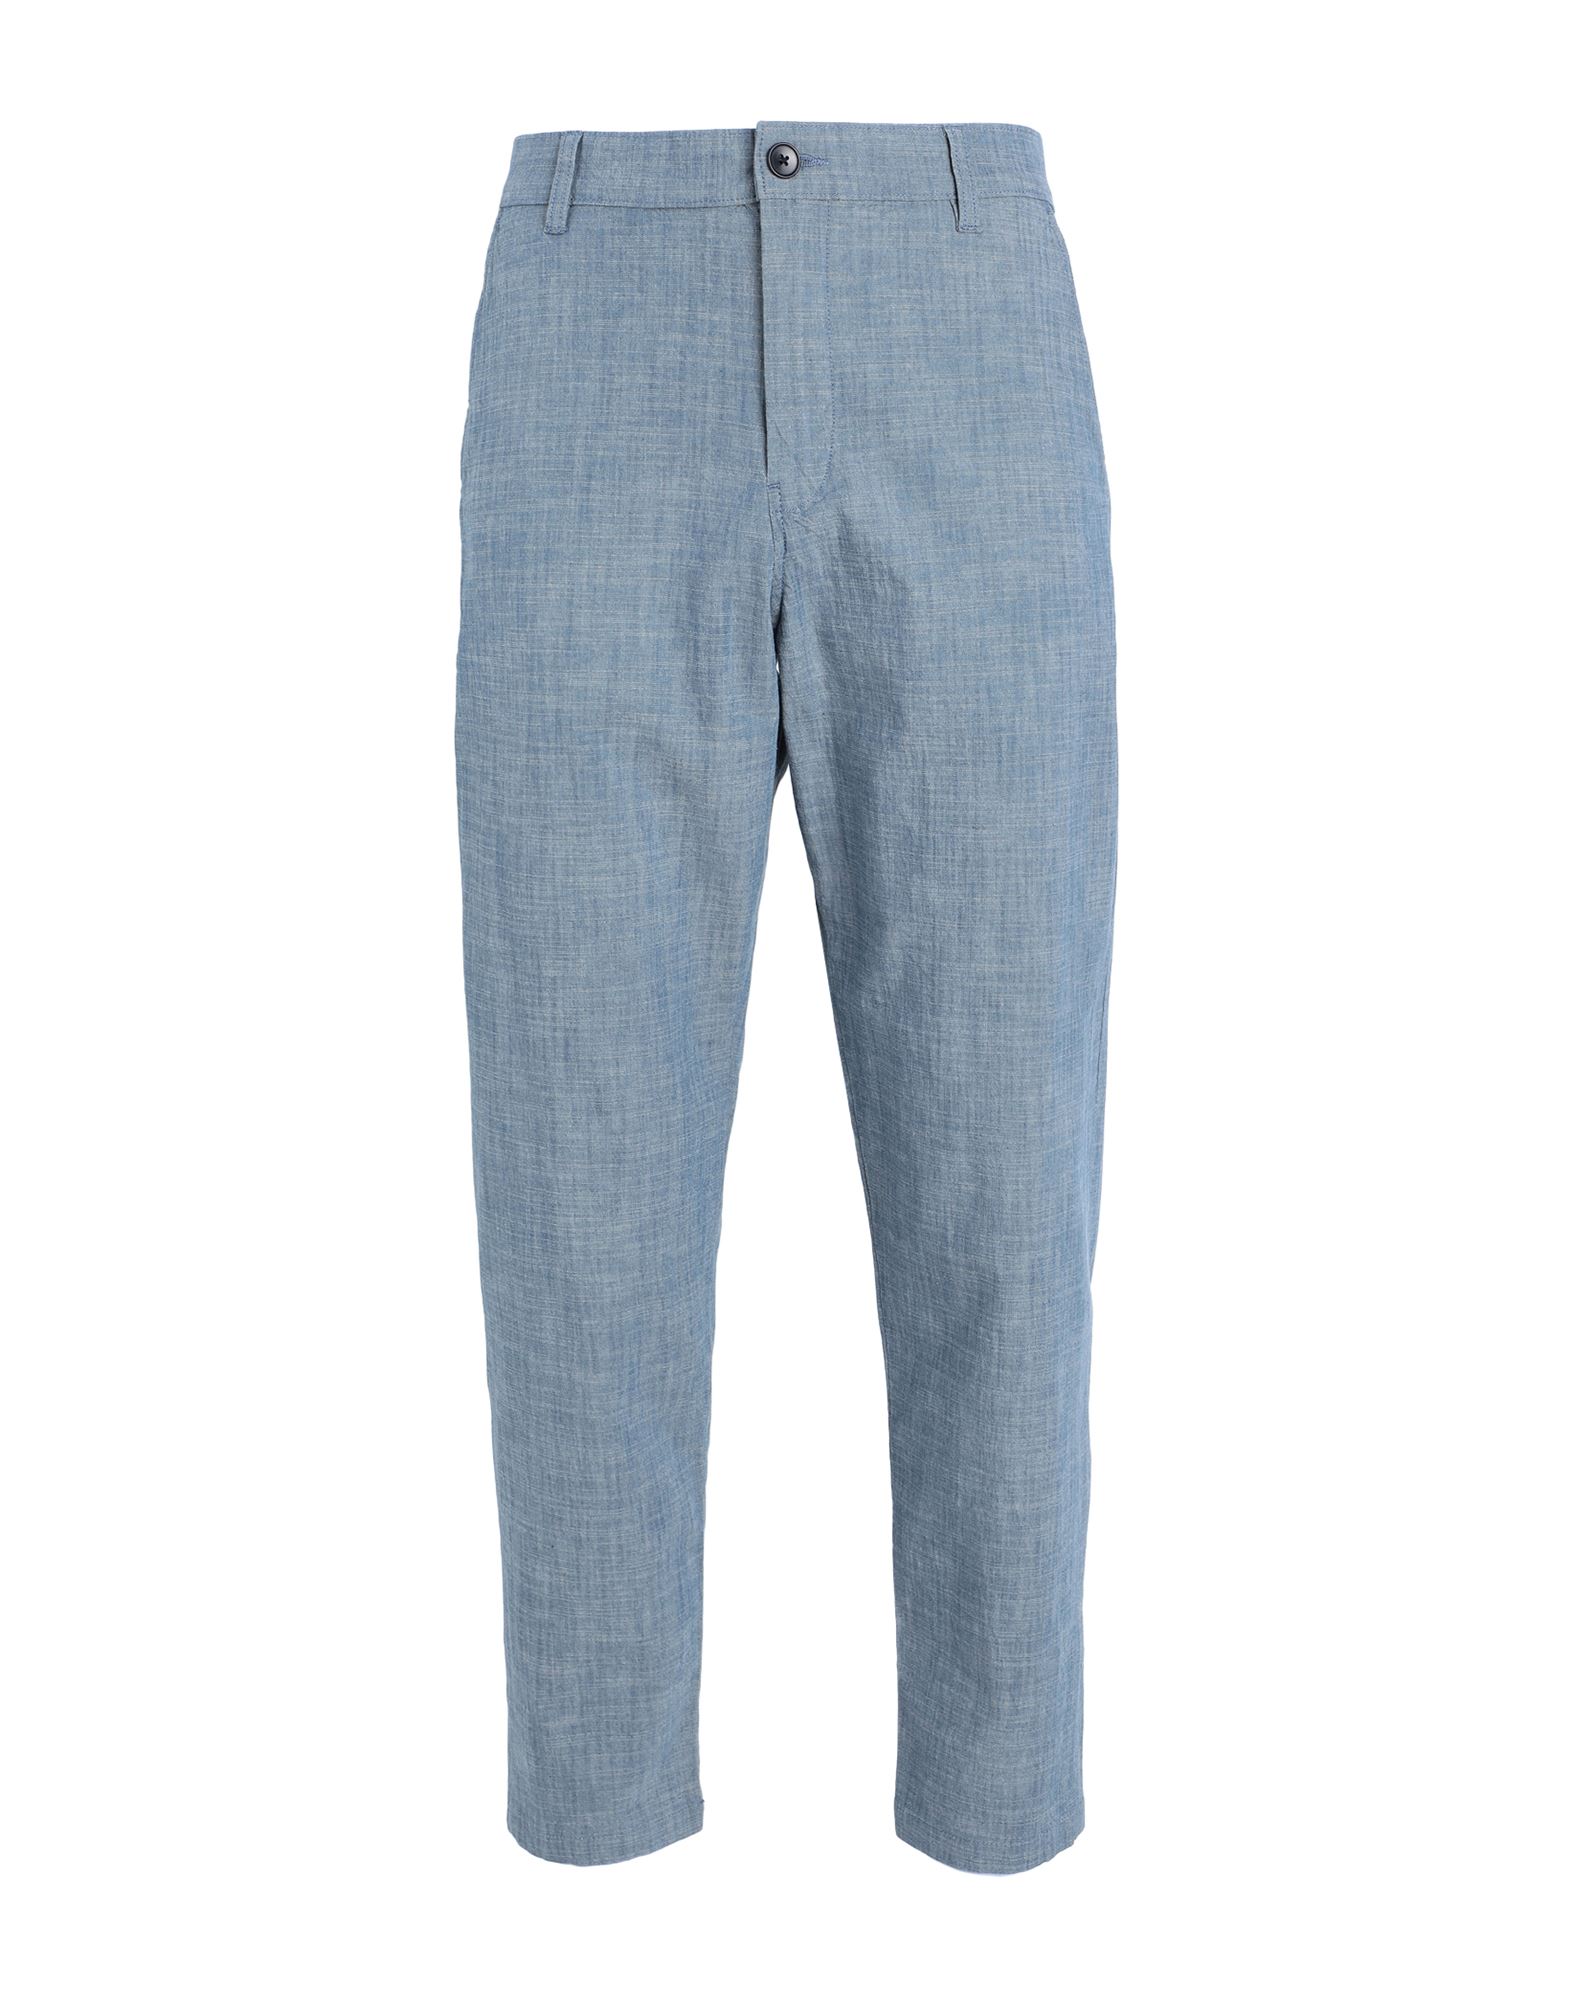 Selected Homme Man Pants Blue Size 34w-34l Organic Cotton, Cotton, Elastane